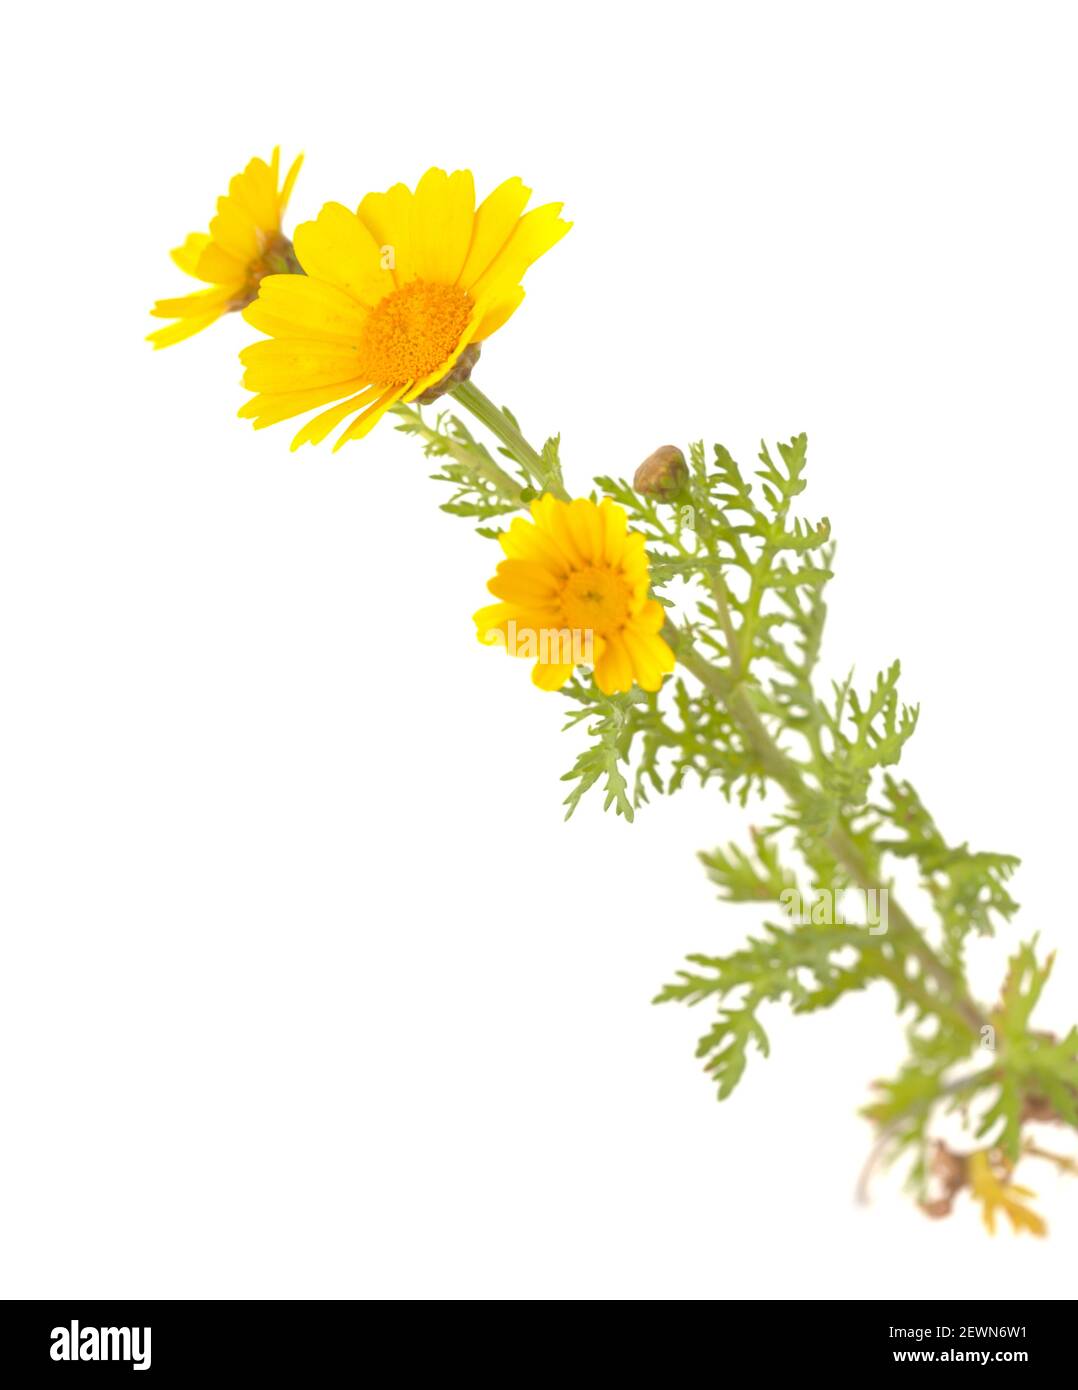 Flora of Gran Canaria - flowering yellow Glebionis coronaria aka garland chrysanthemum isolated on white background Stock Photo